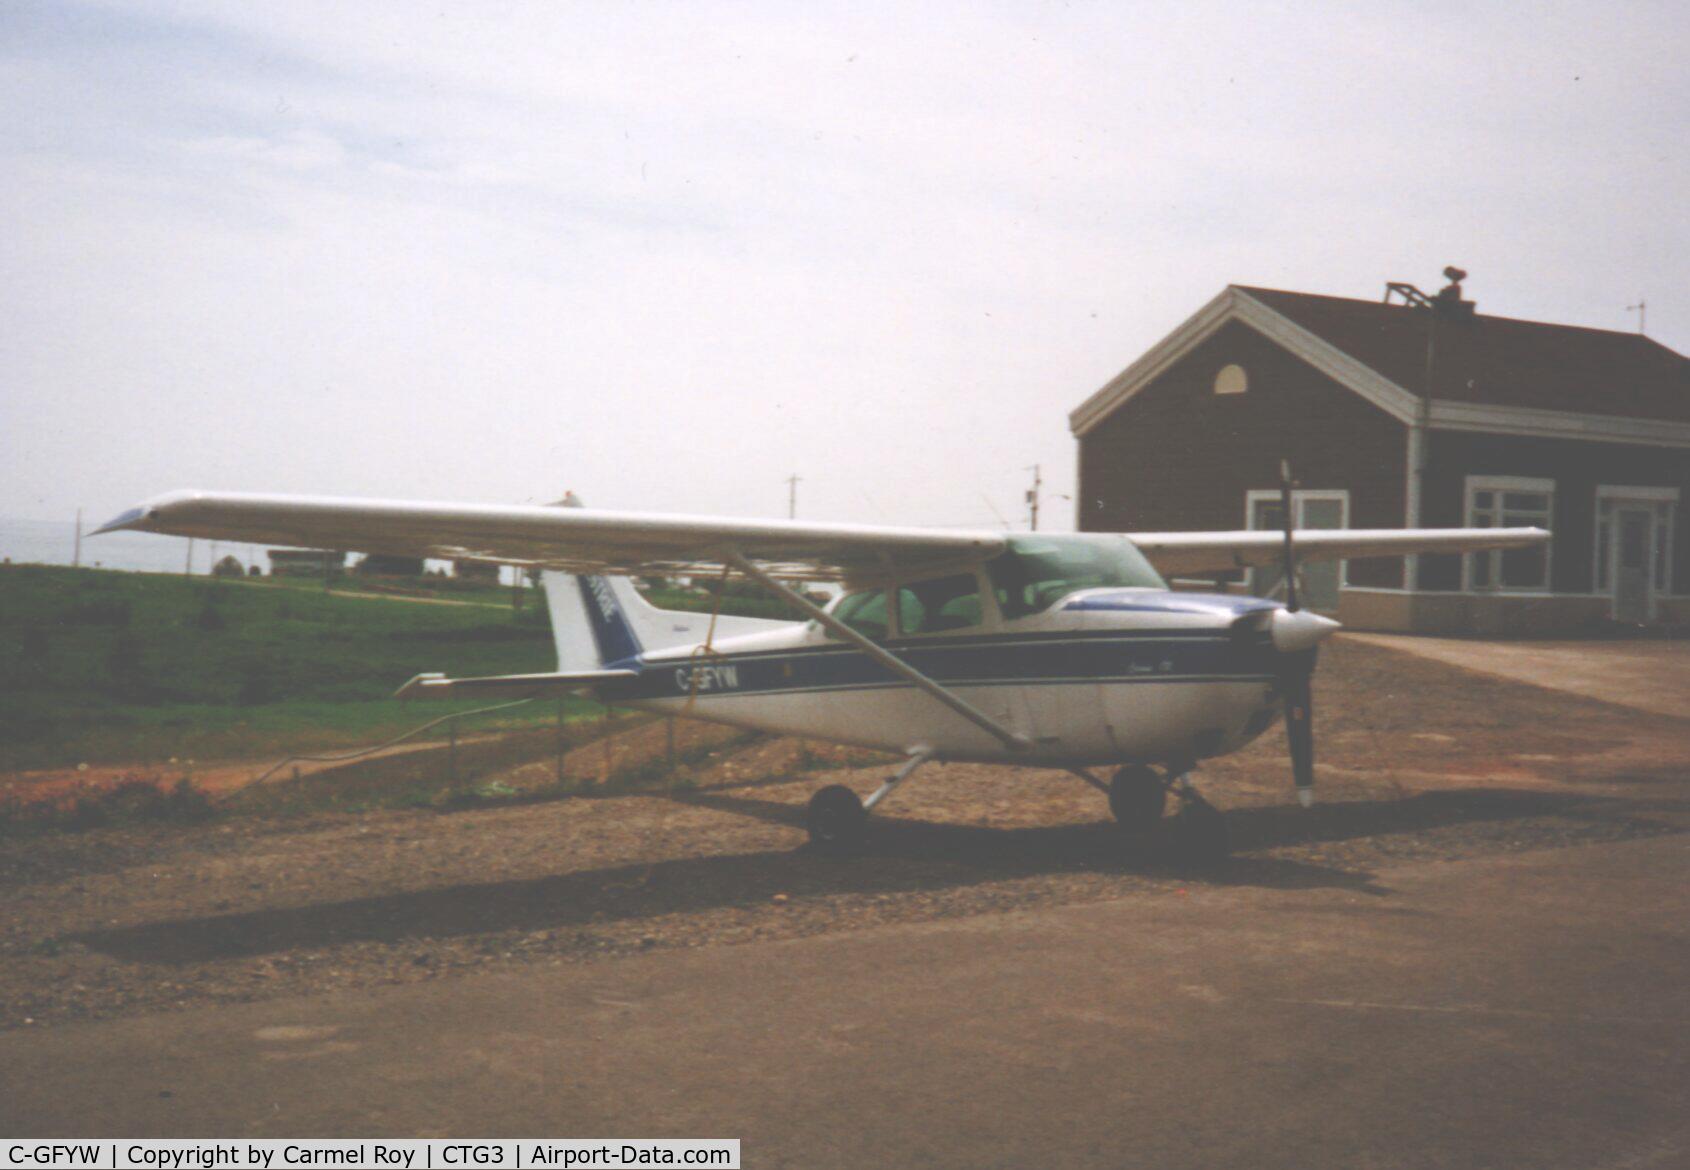 C-GFYW, 1976 Cessna 172M C/N 17267577, my first solo flight